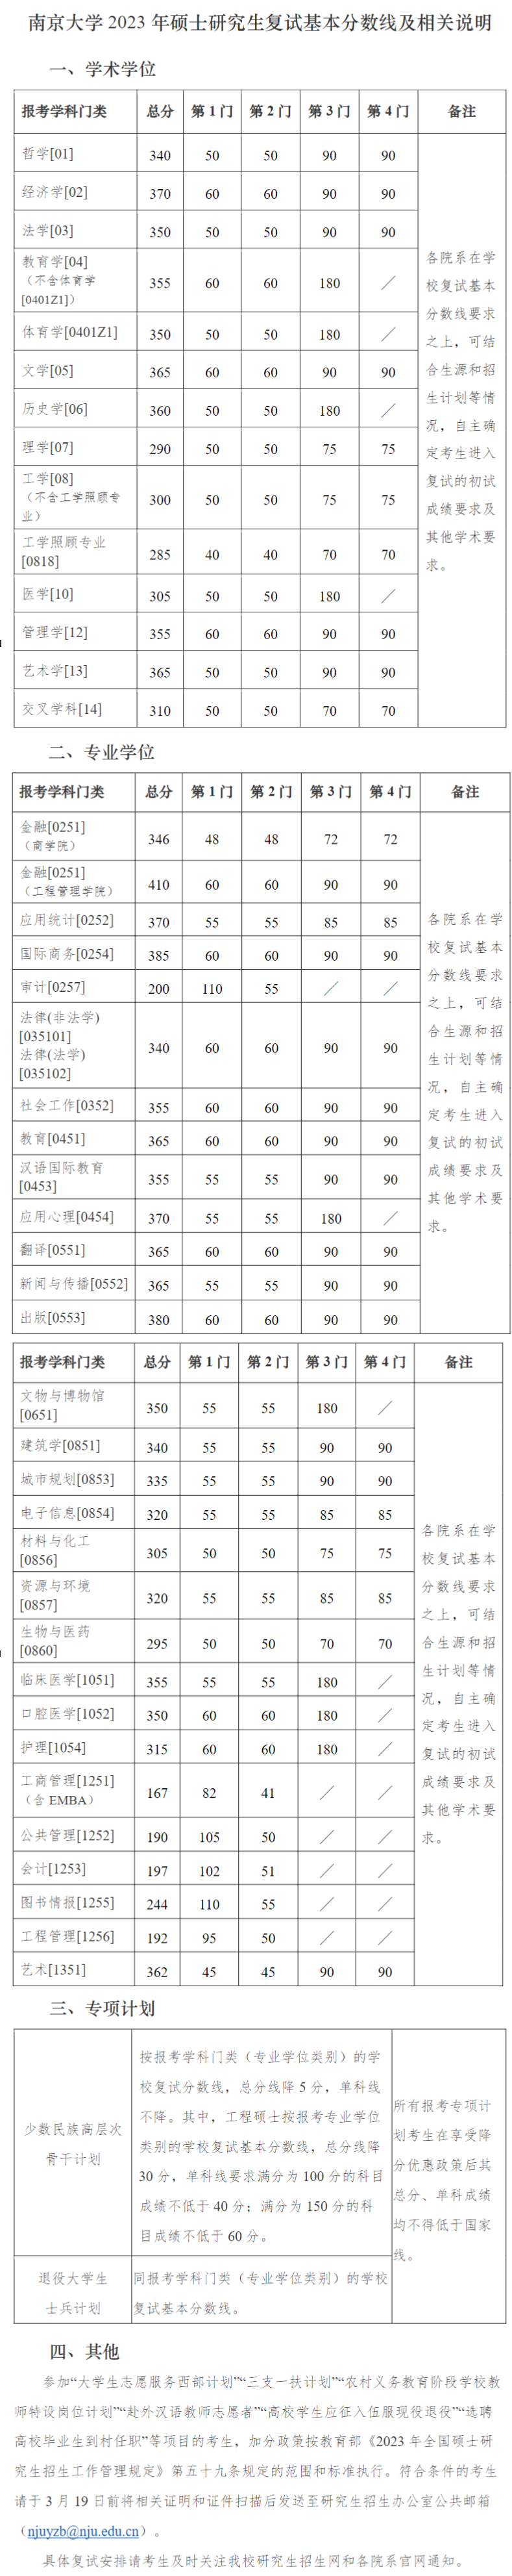 2023南京大学考研分数线